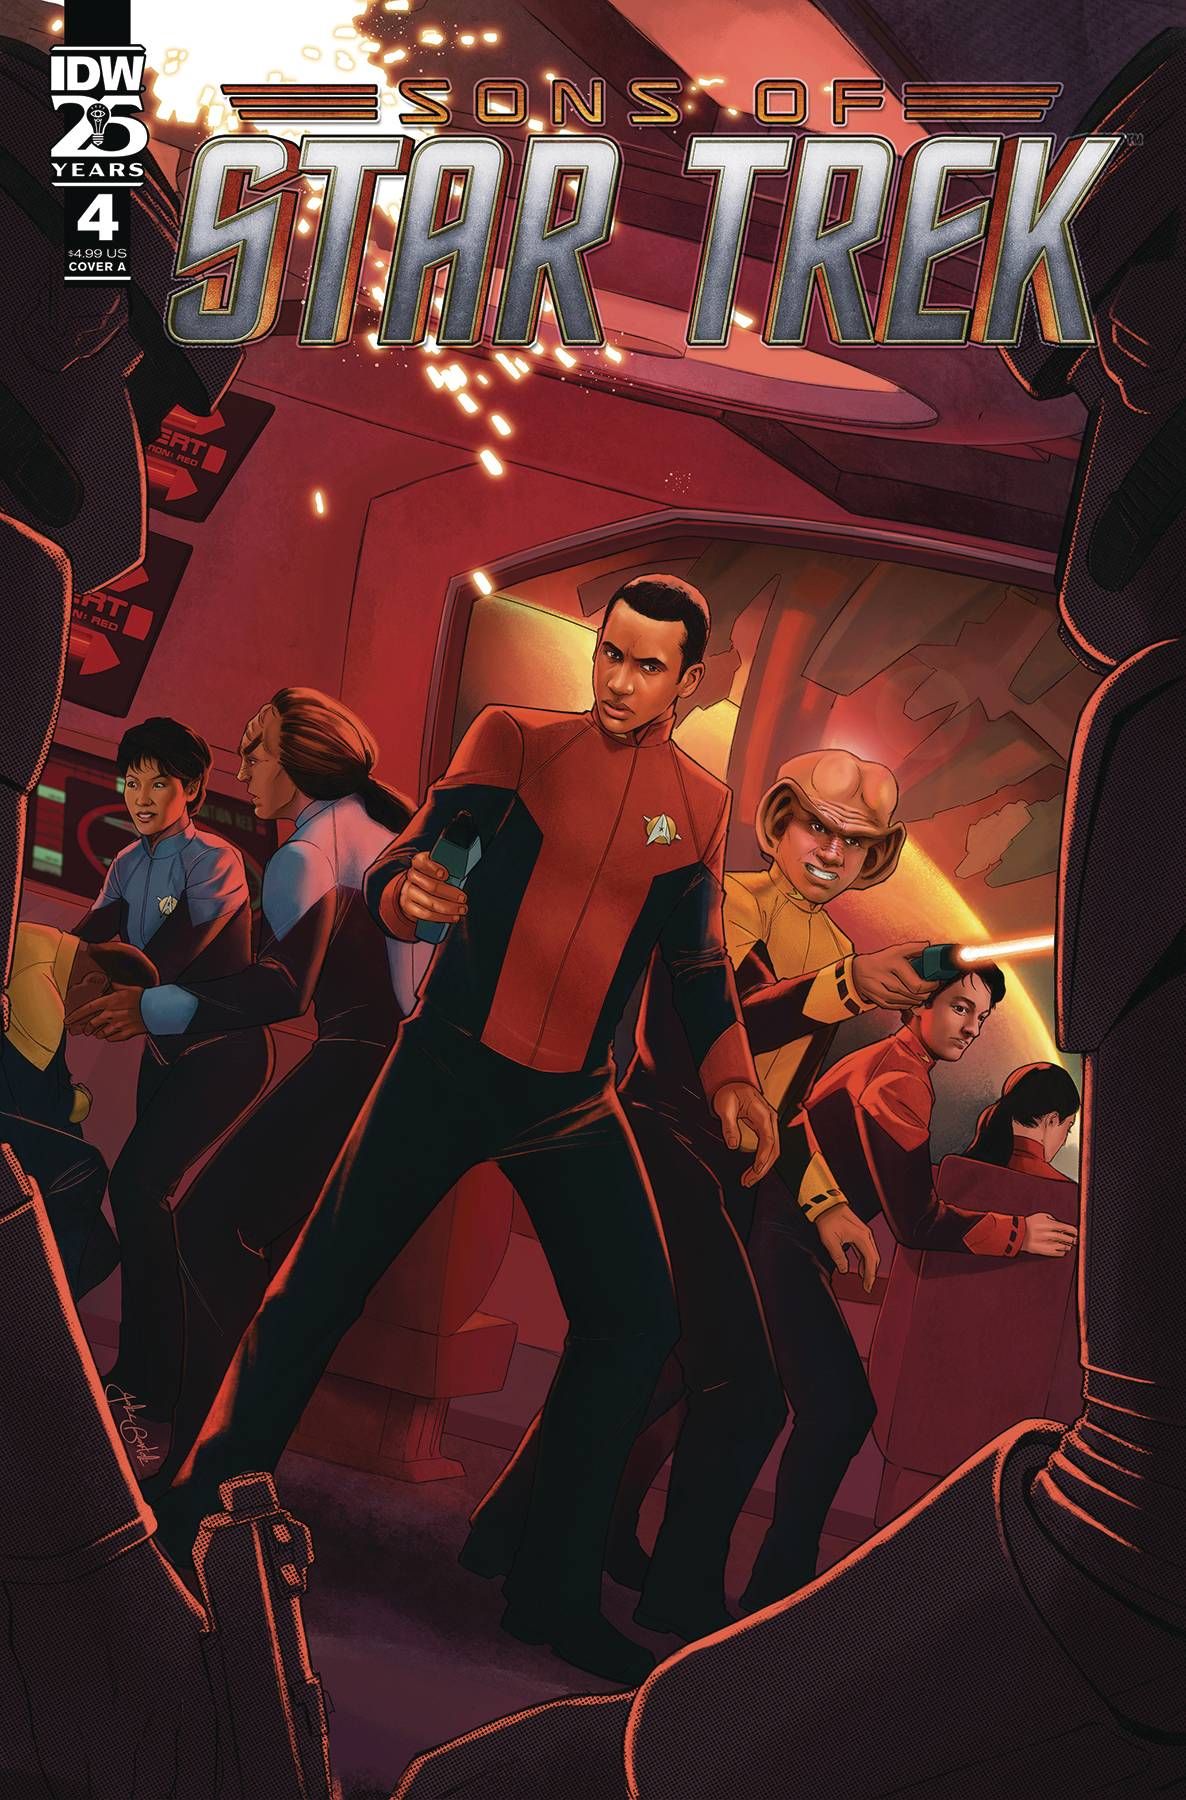 Star Trek: Sons of Star Trek #4 Comic